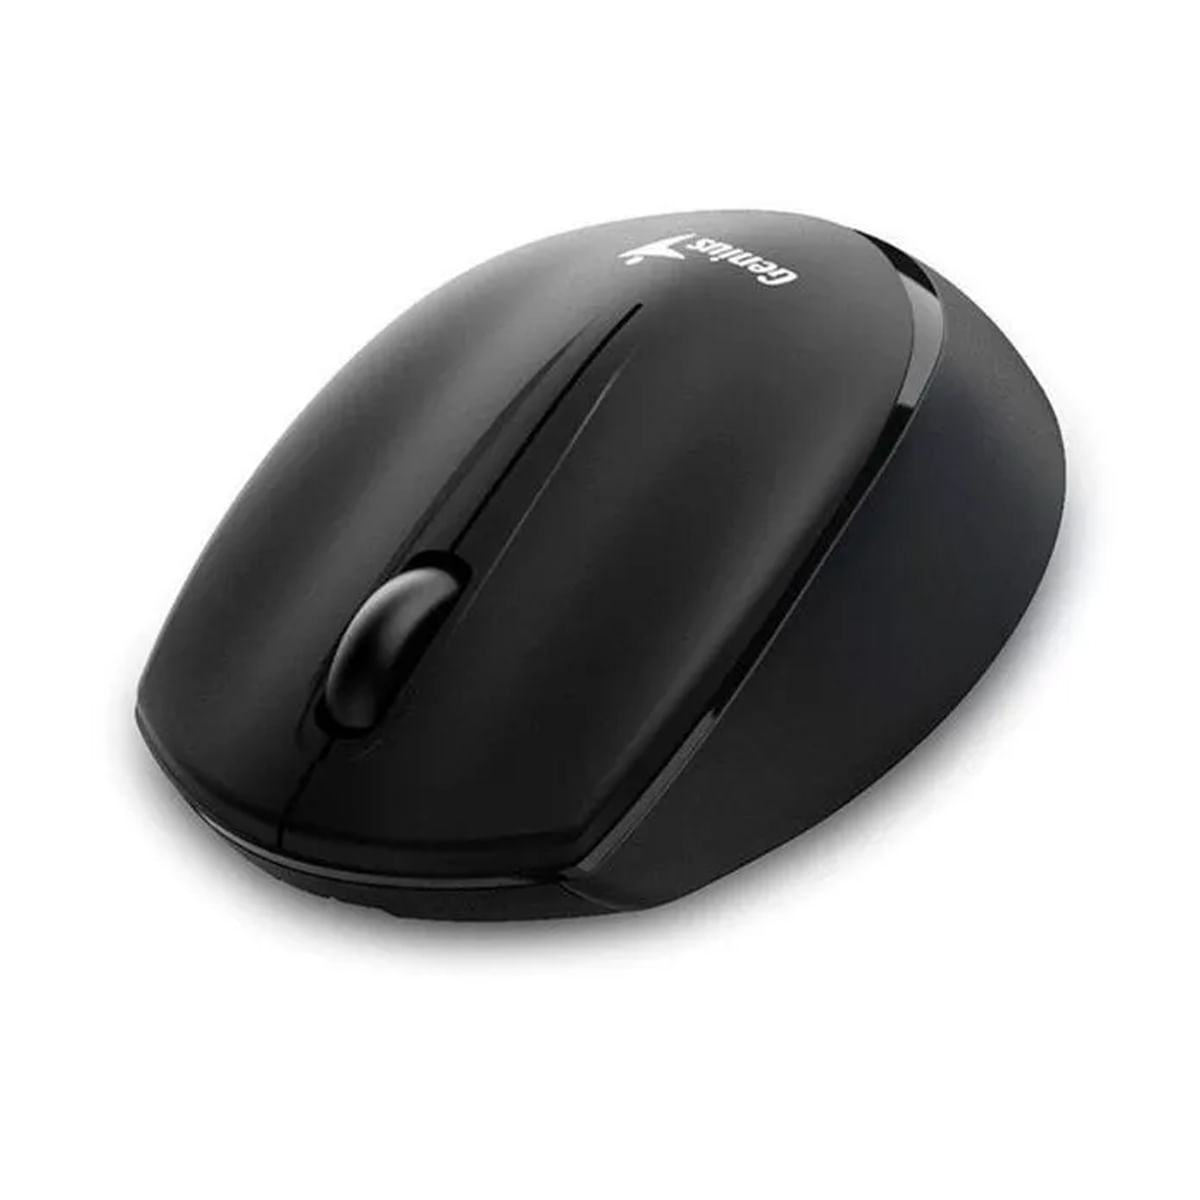 Mouse Genius Nx-7009 Wireless  Ergonomico  Negro